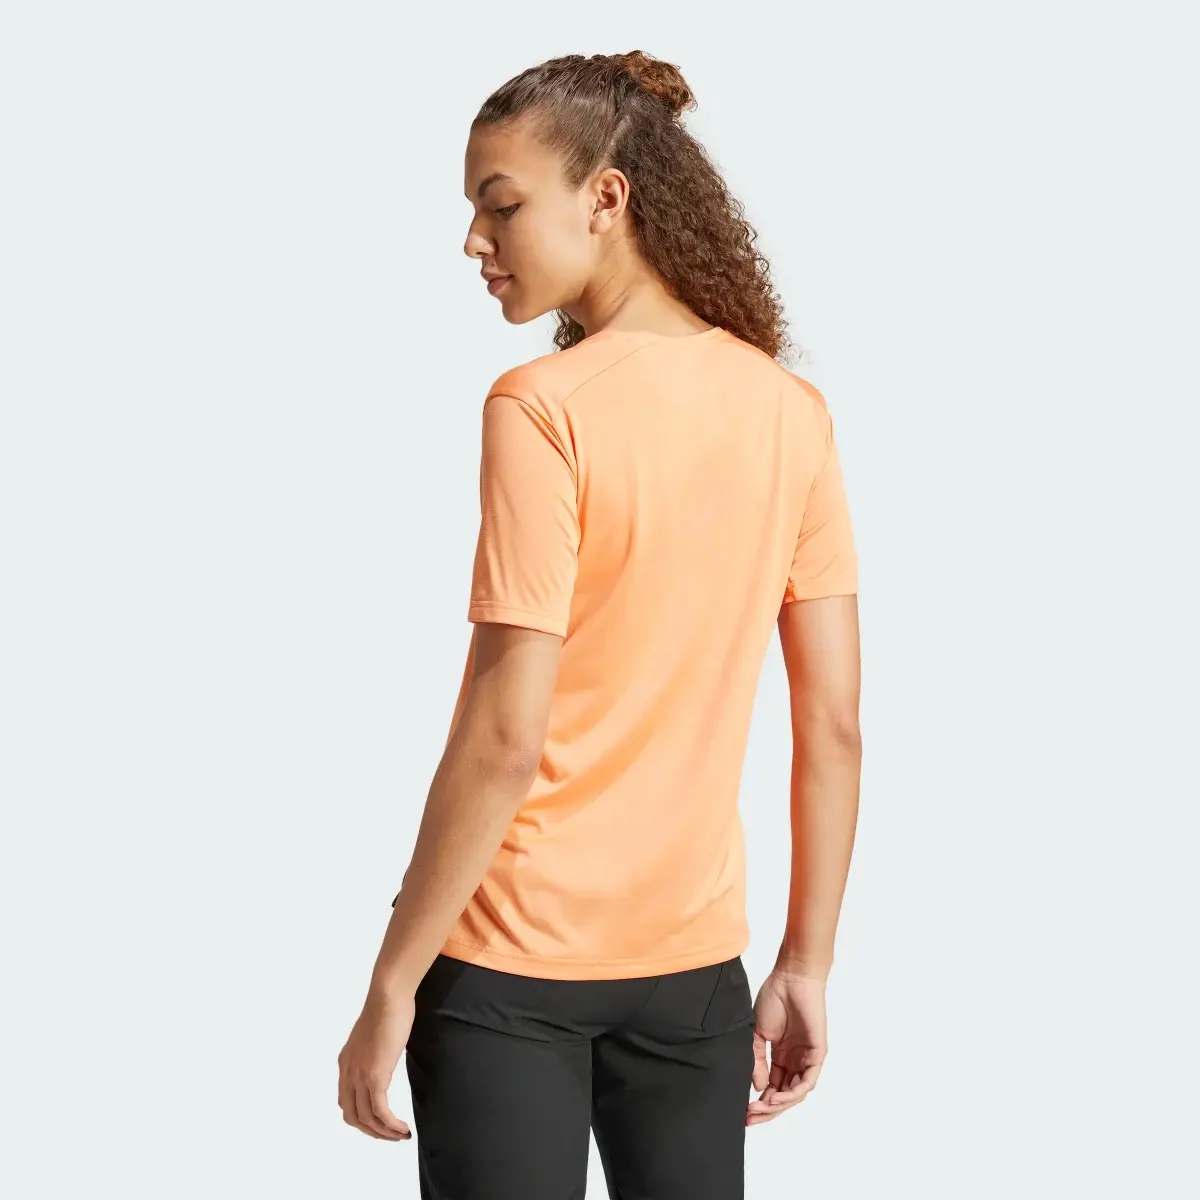 Adidas T-shirt Terrex Multi. 3